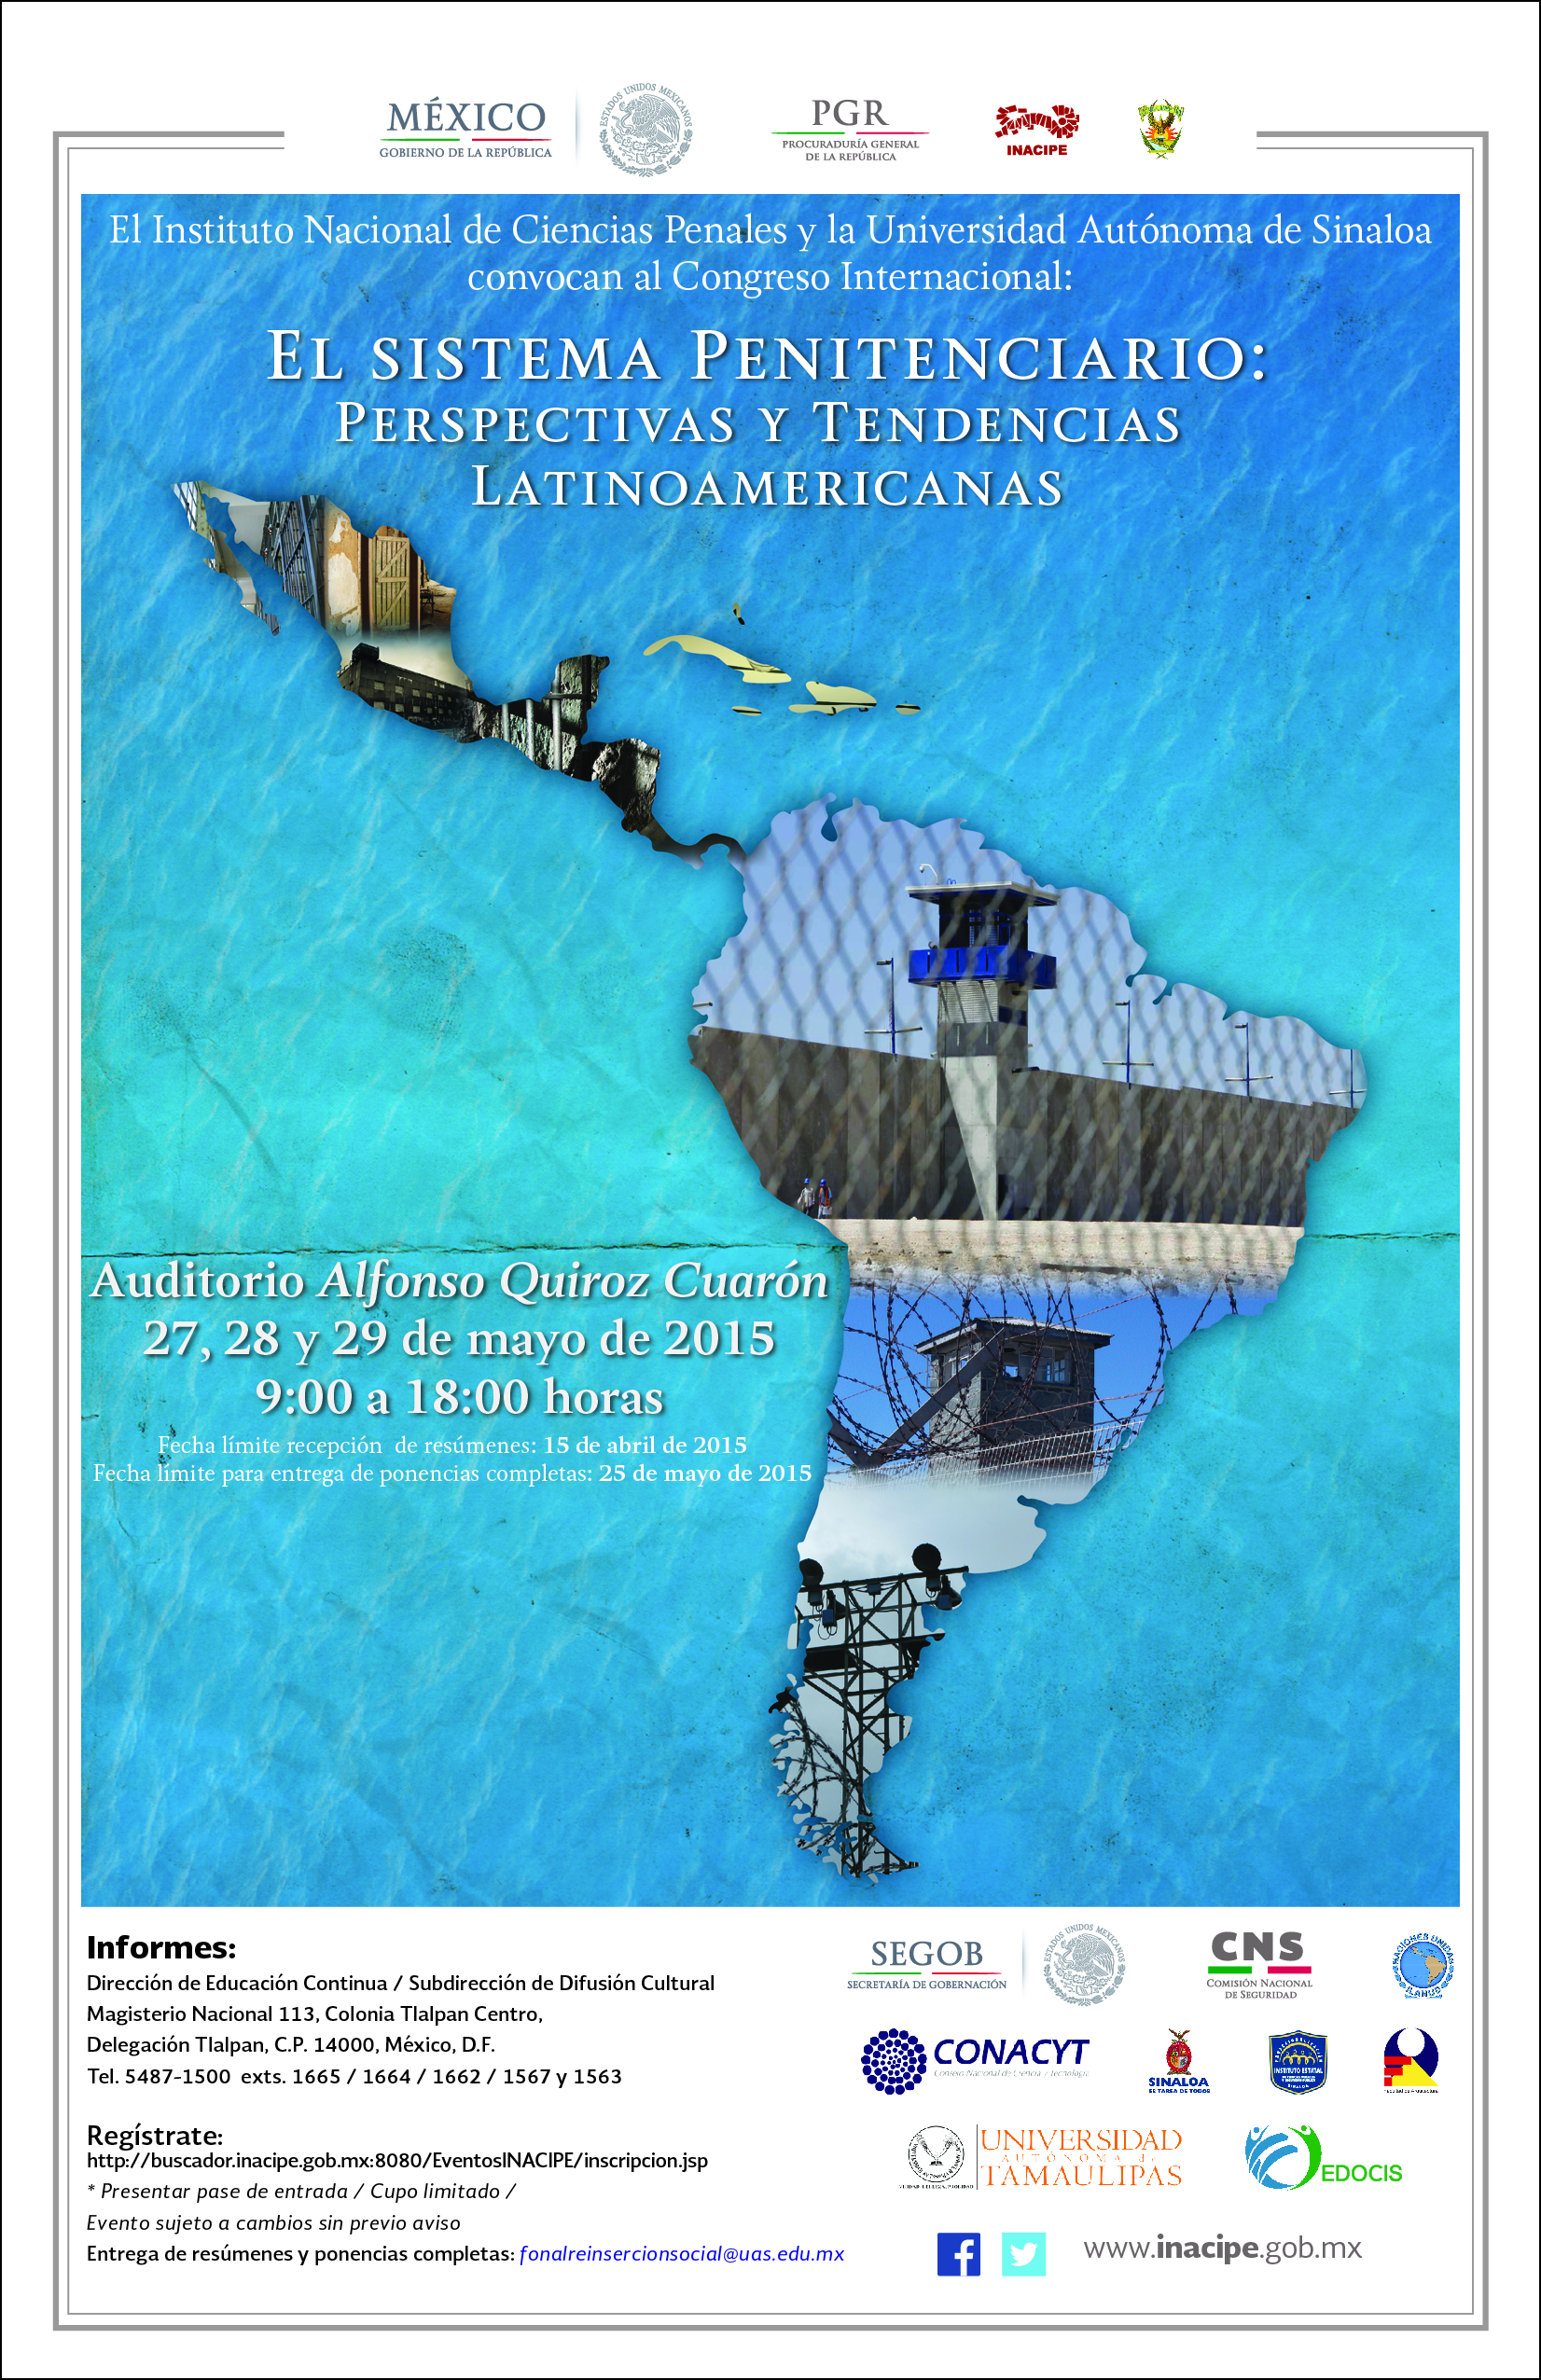 ILANUD participará en el congreso internacional El Sistema Penitenciario: Perspectivas y Tendencias Latinoamericanas